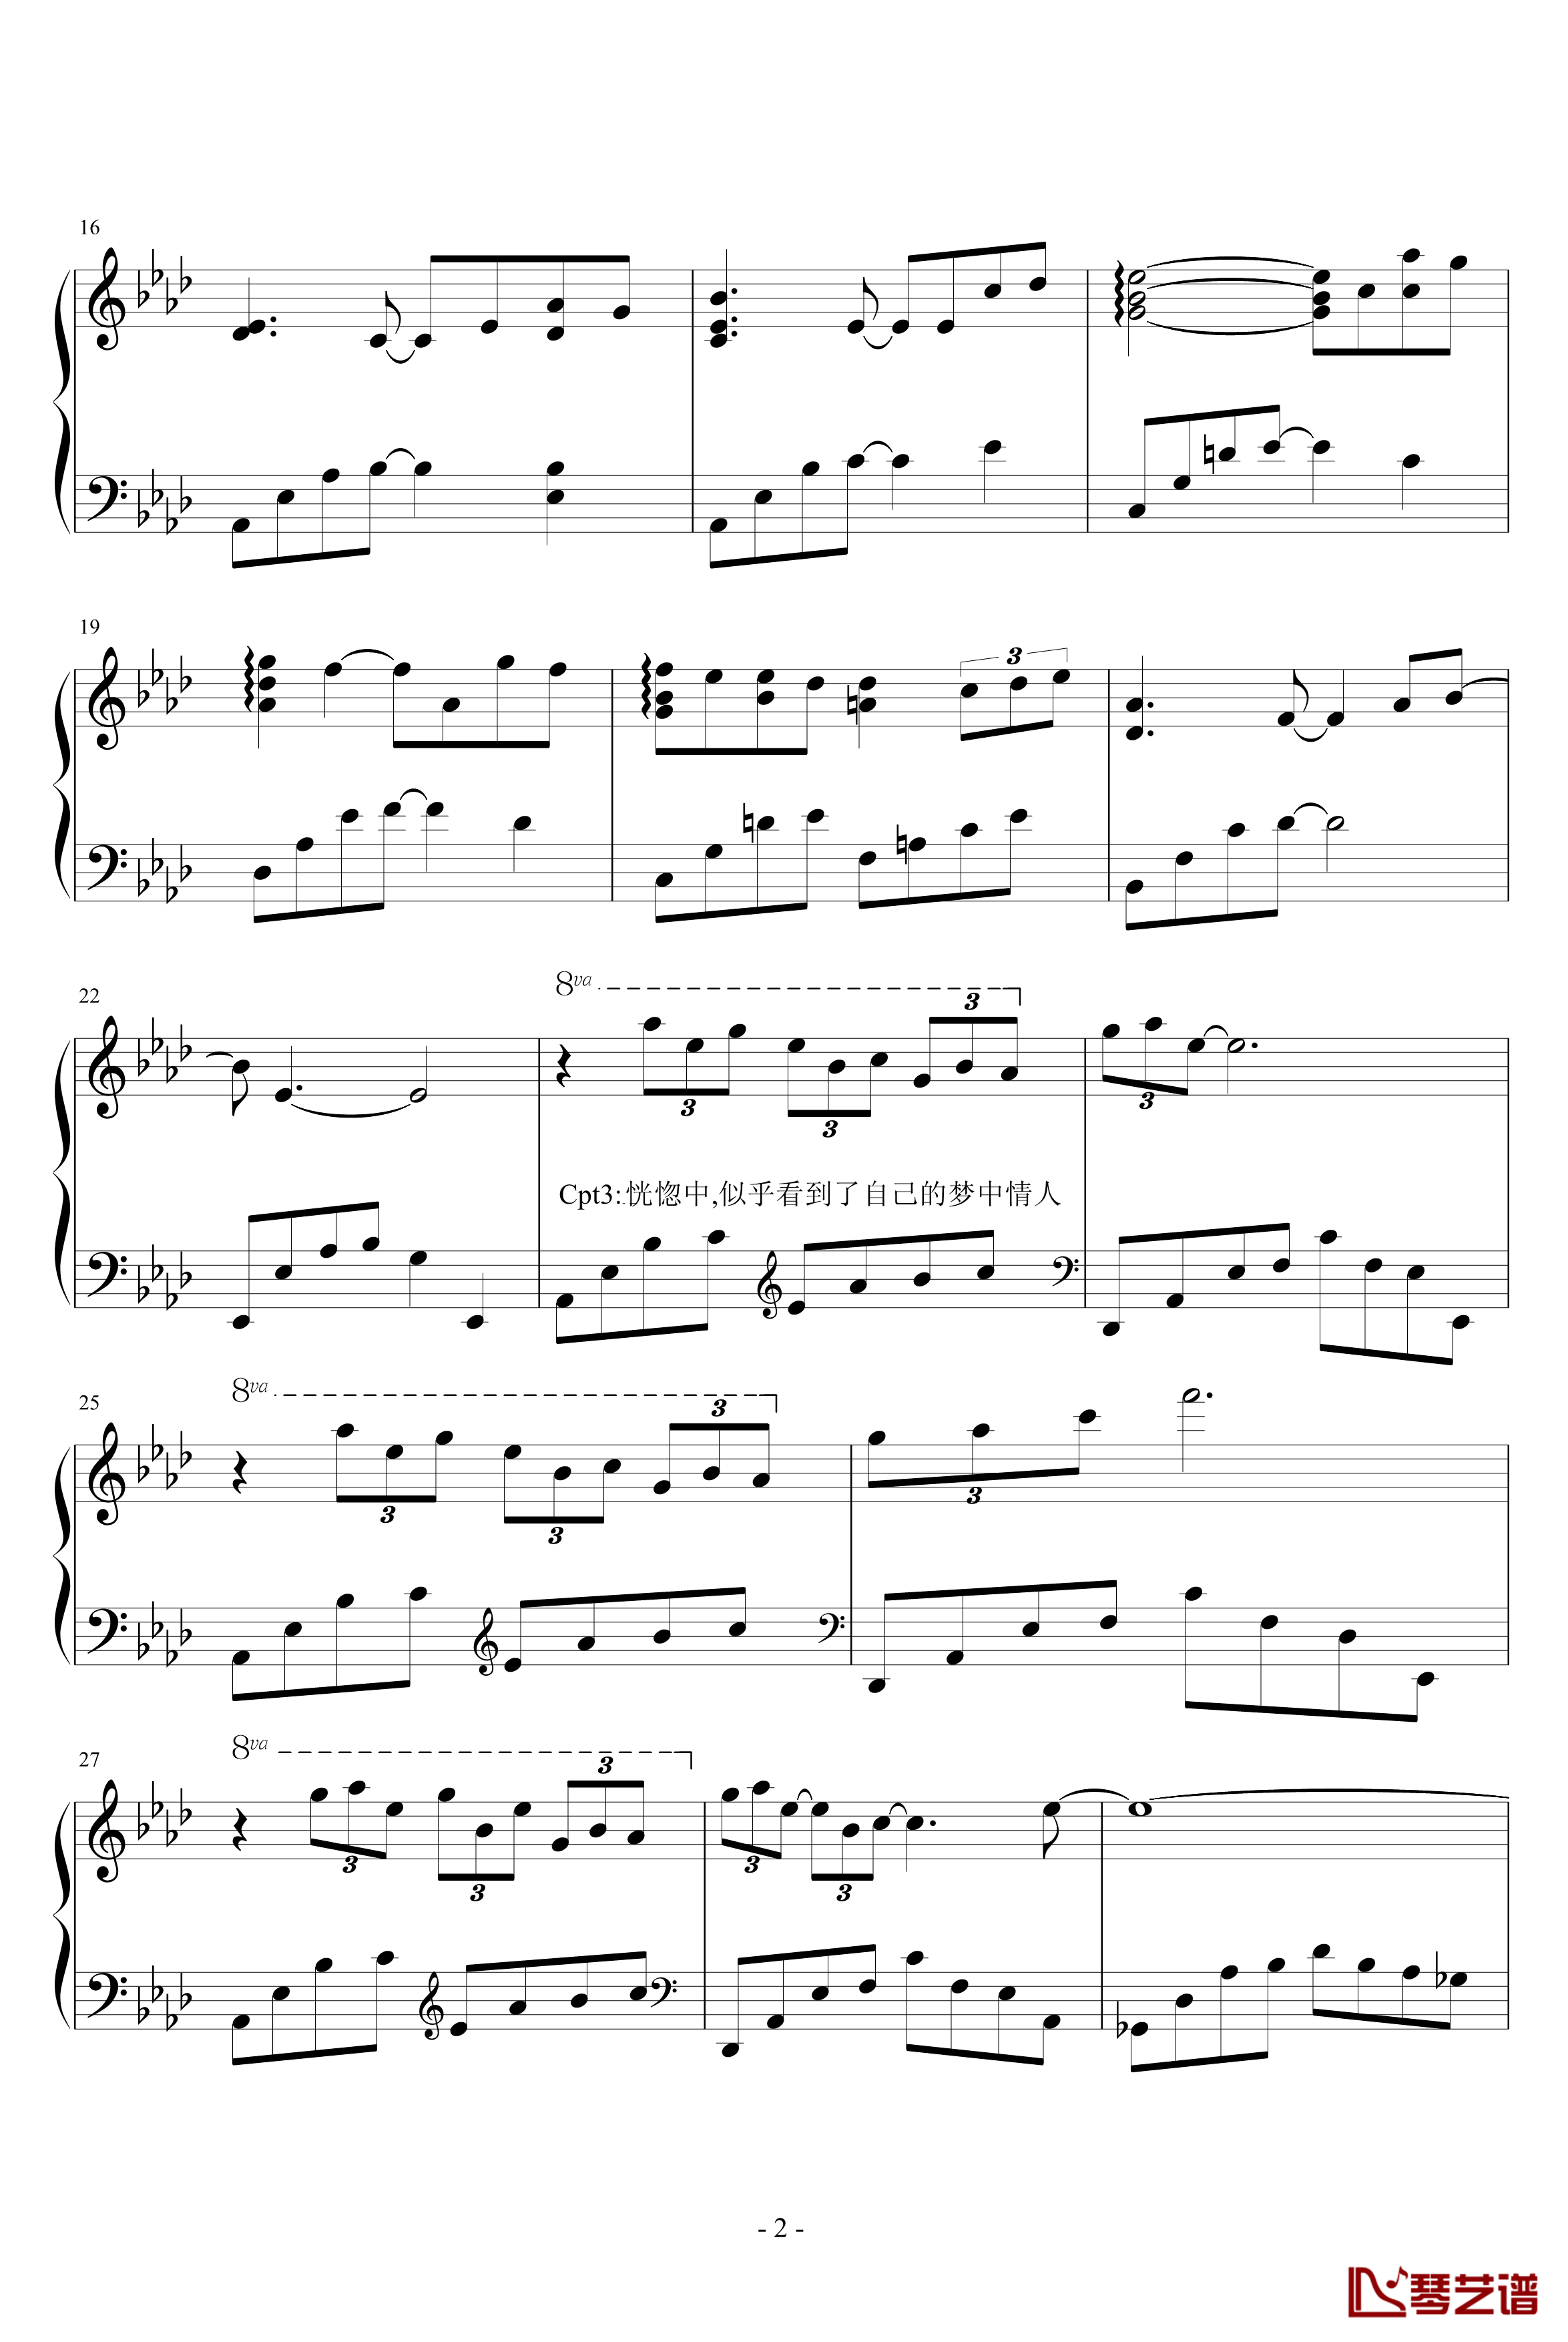 老光棍的愿钢琴谱-光棍组曲vol.2-钢琴叫兽2